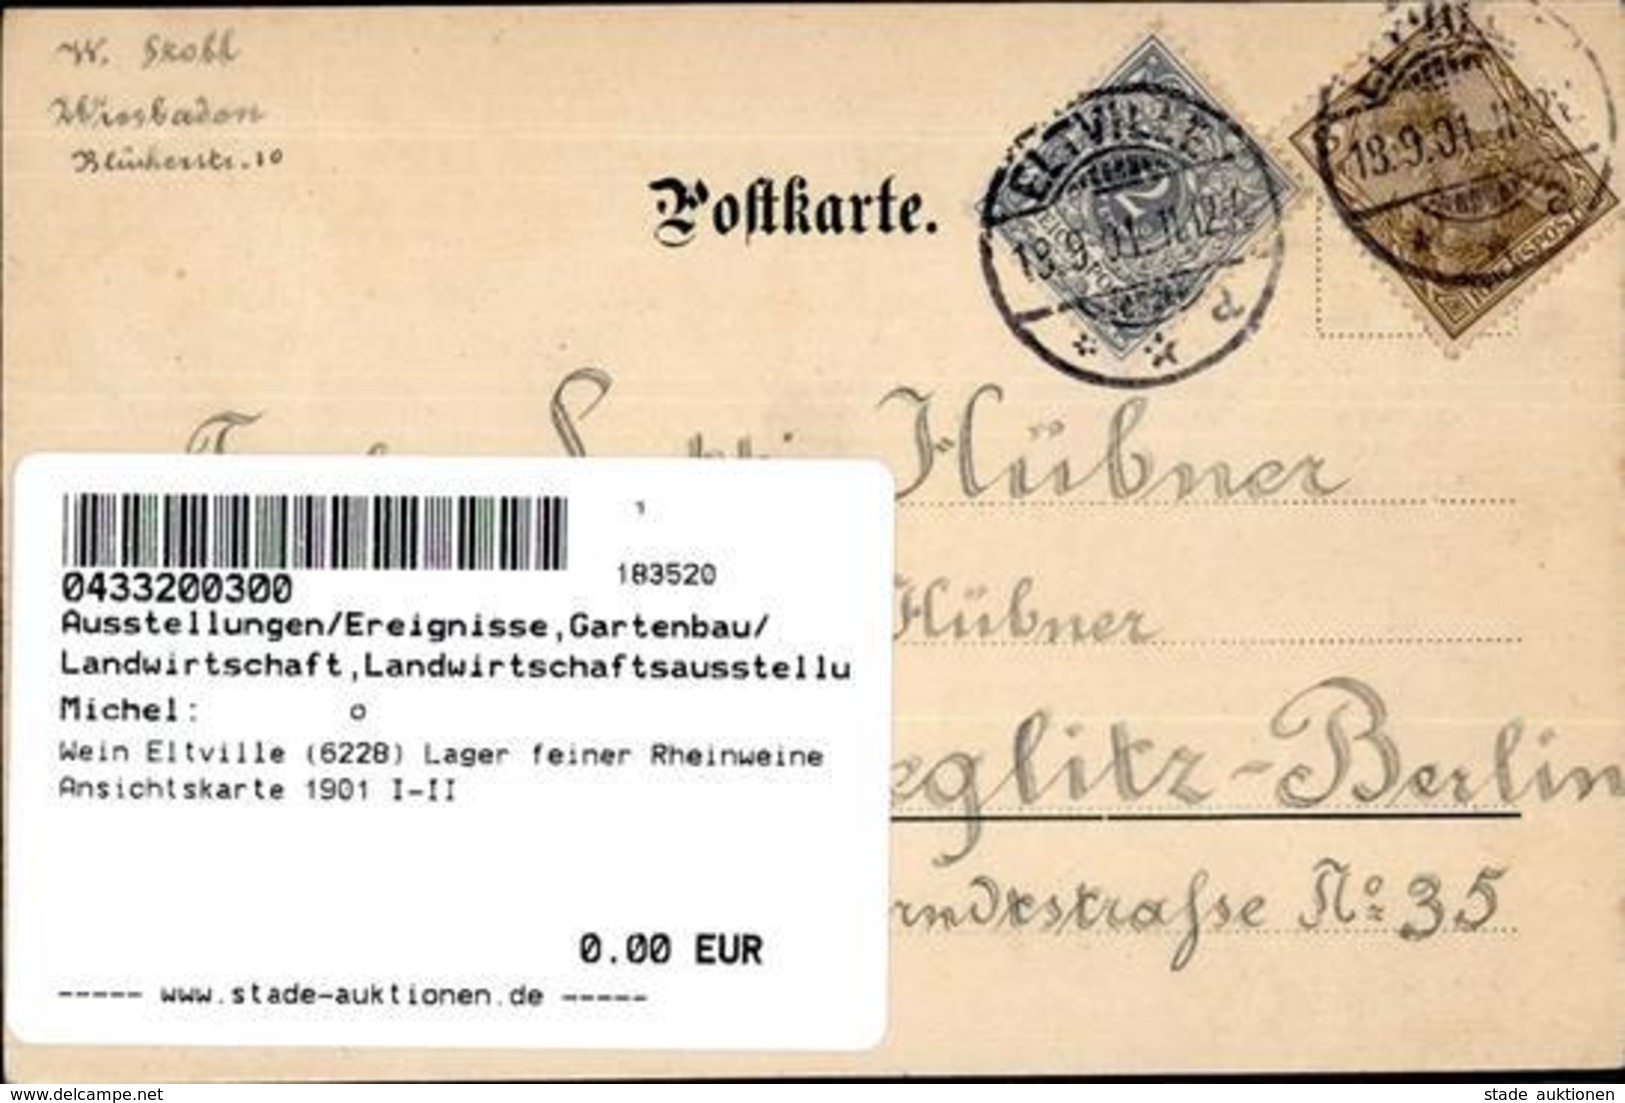 Wein Eltville (6228) Lager Feiner Rheinweine Ansichtskarte 1901 I-II Vigne - Exhibitions